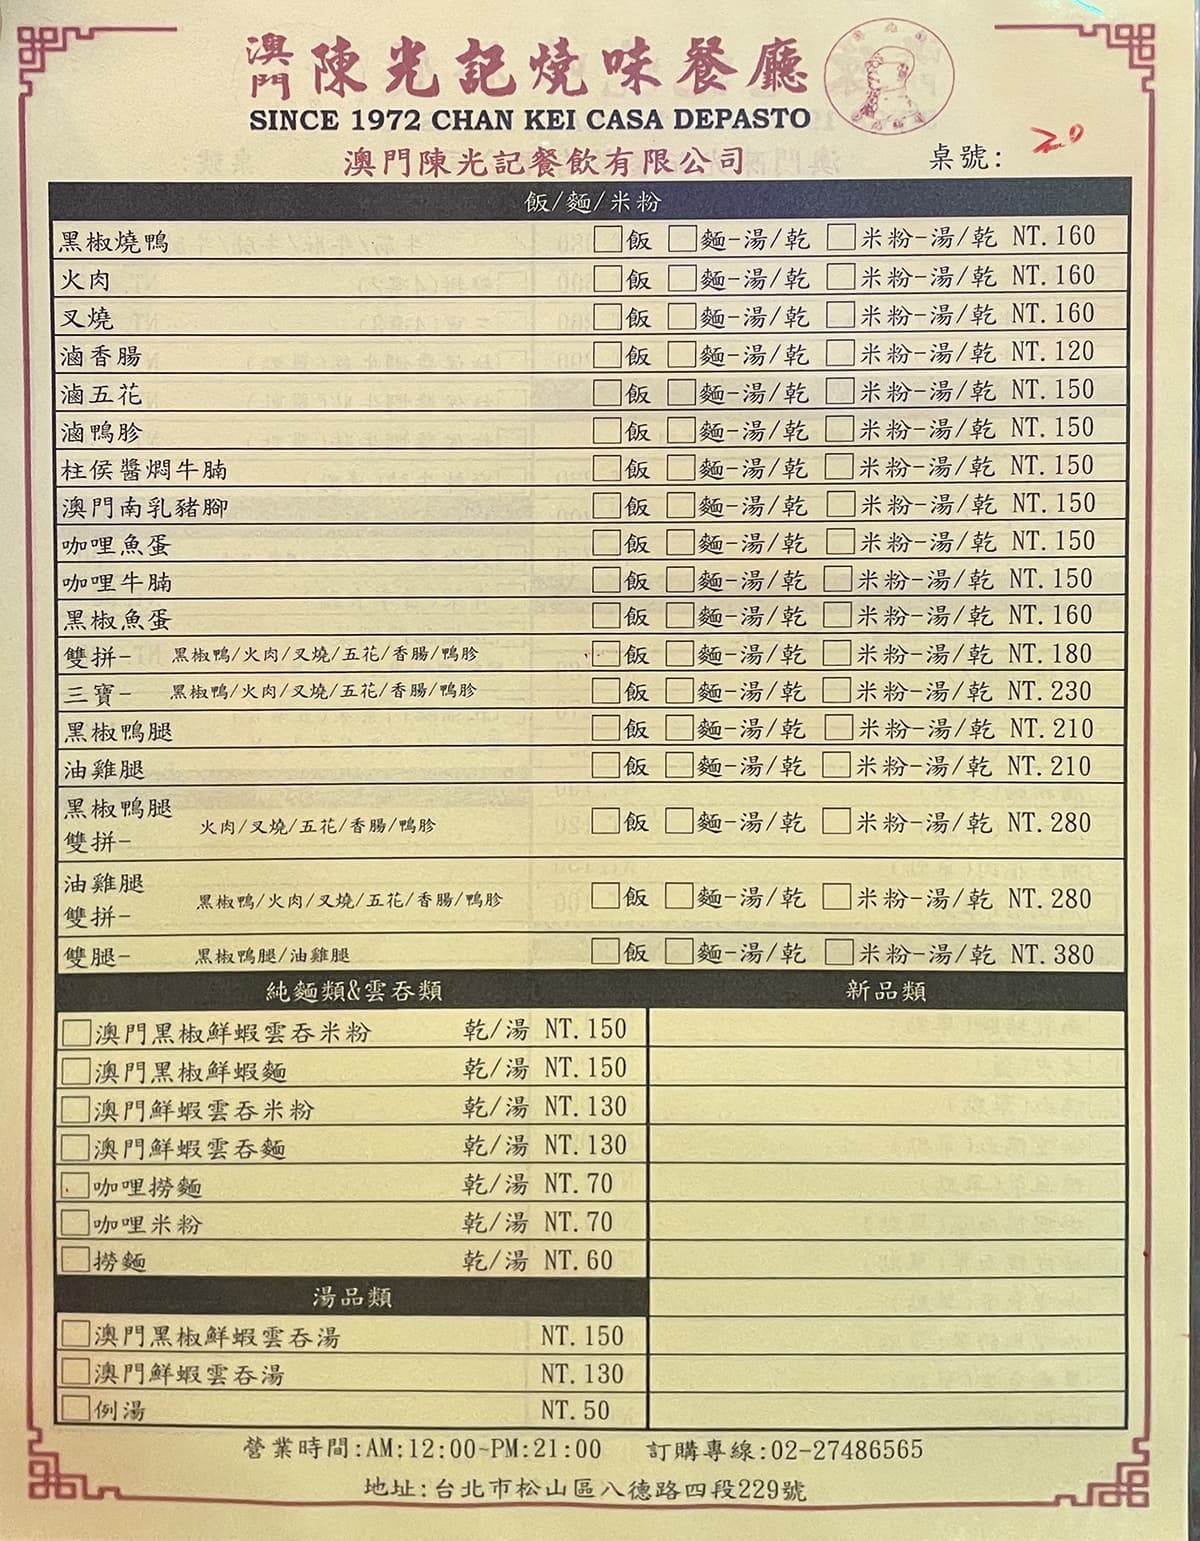 陳光記燒臘飯店 八德店菜單